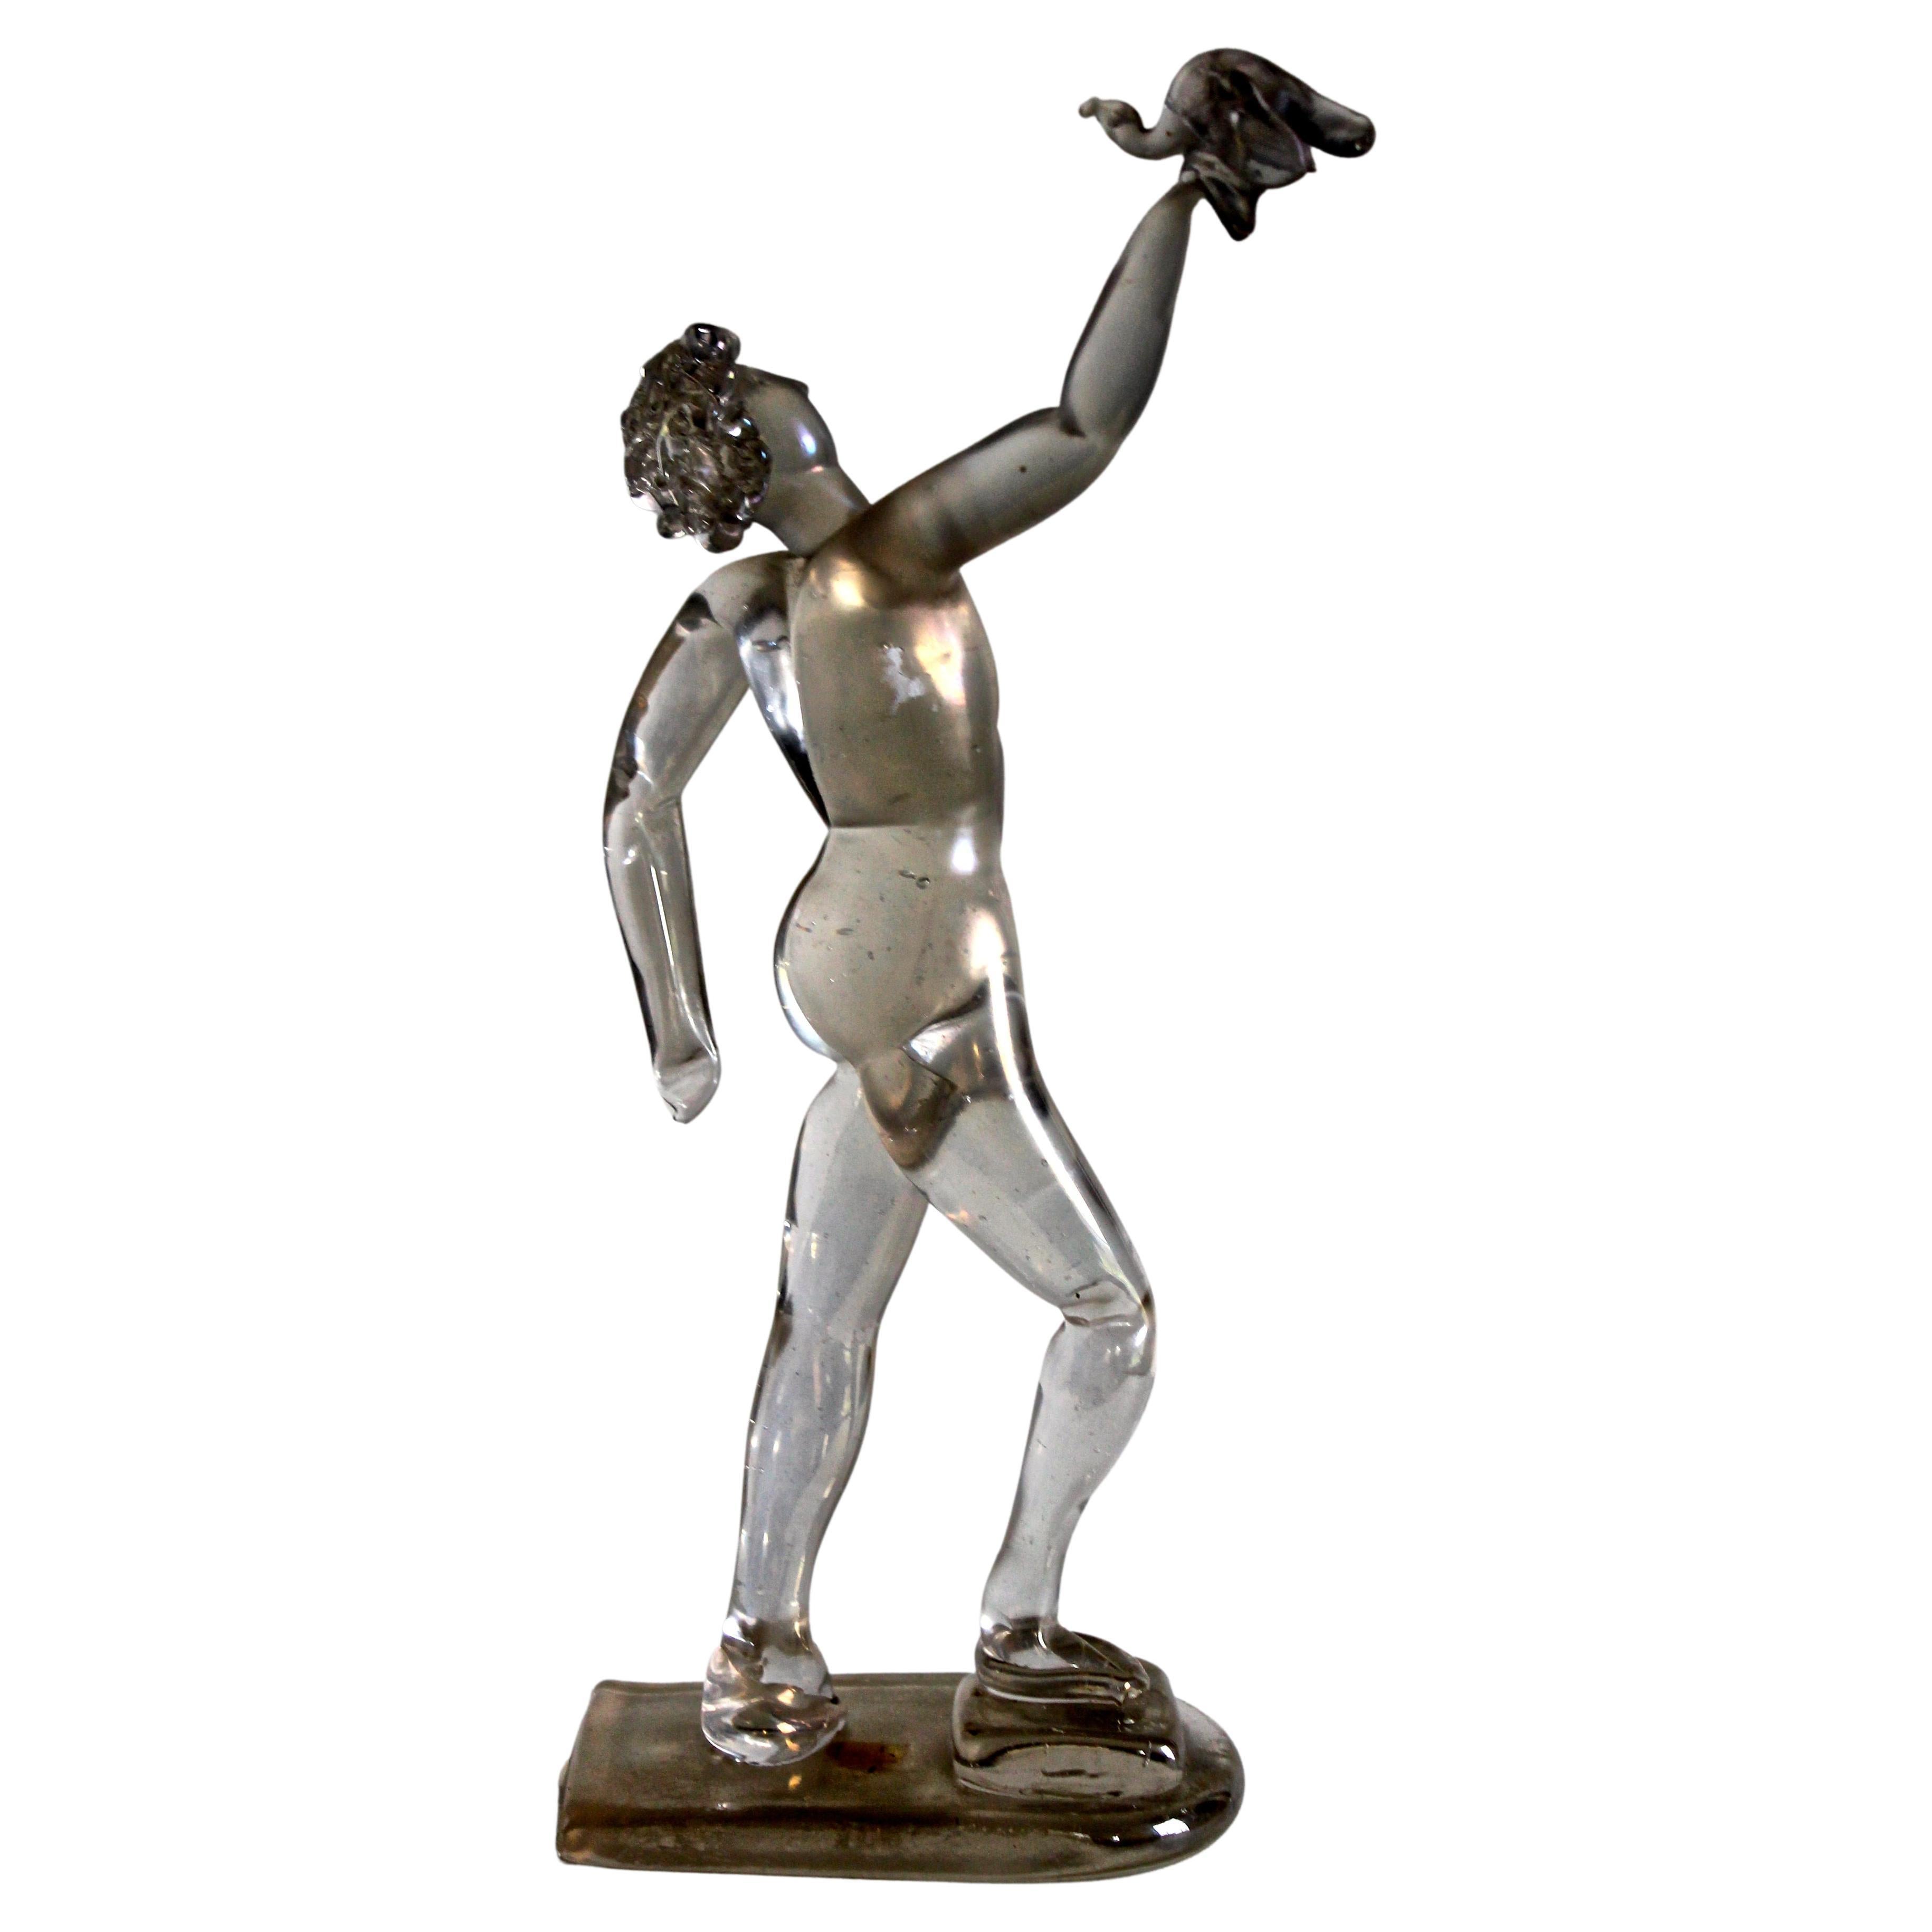  Seguso Vetri d'Arte Große und wichtige Barbini-Figur aus irisiertem Glas, männliche Figur